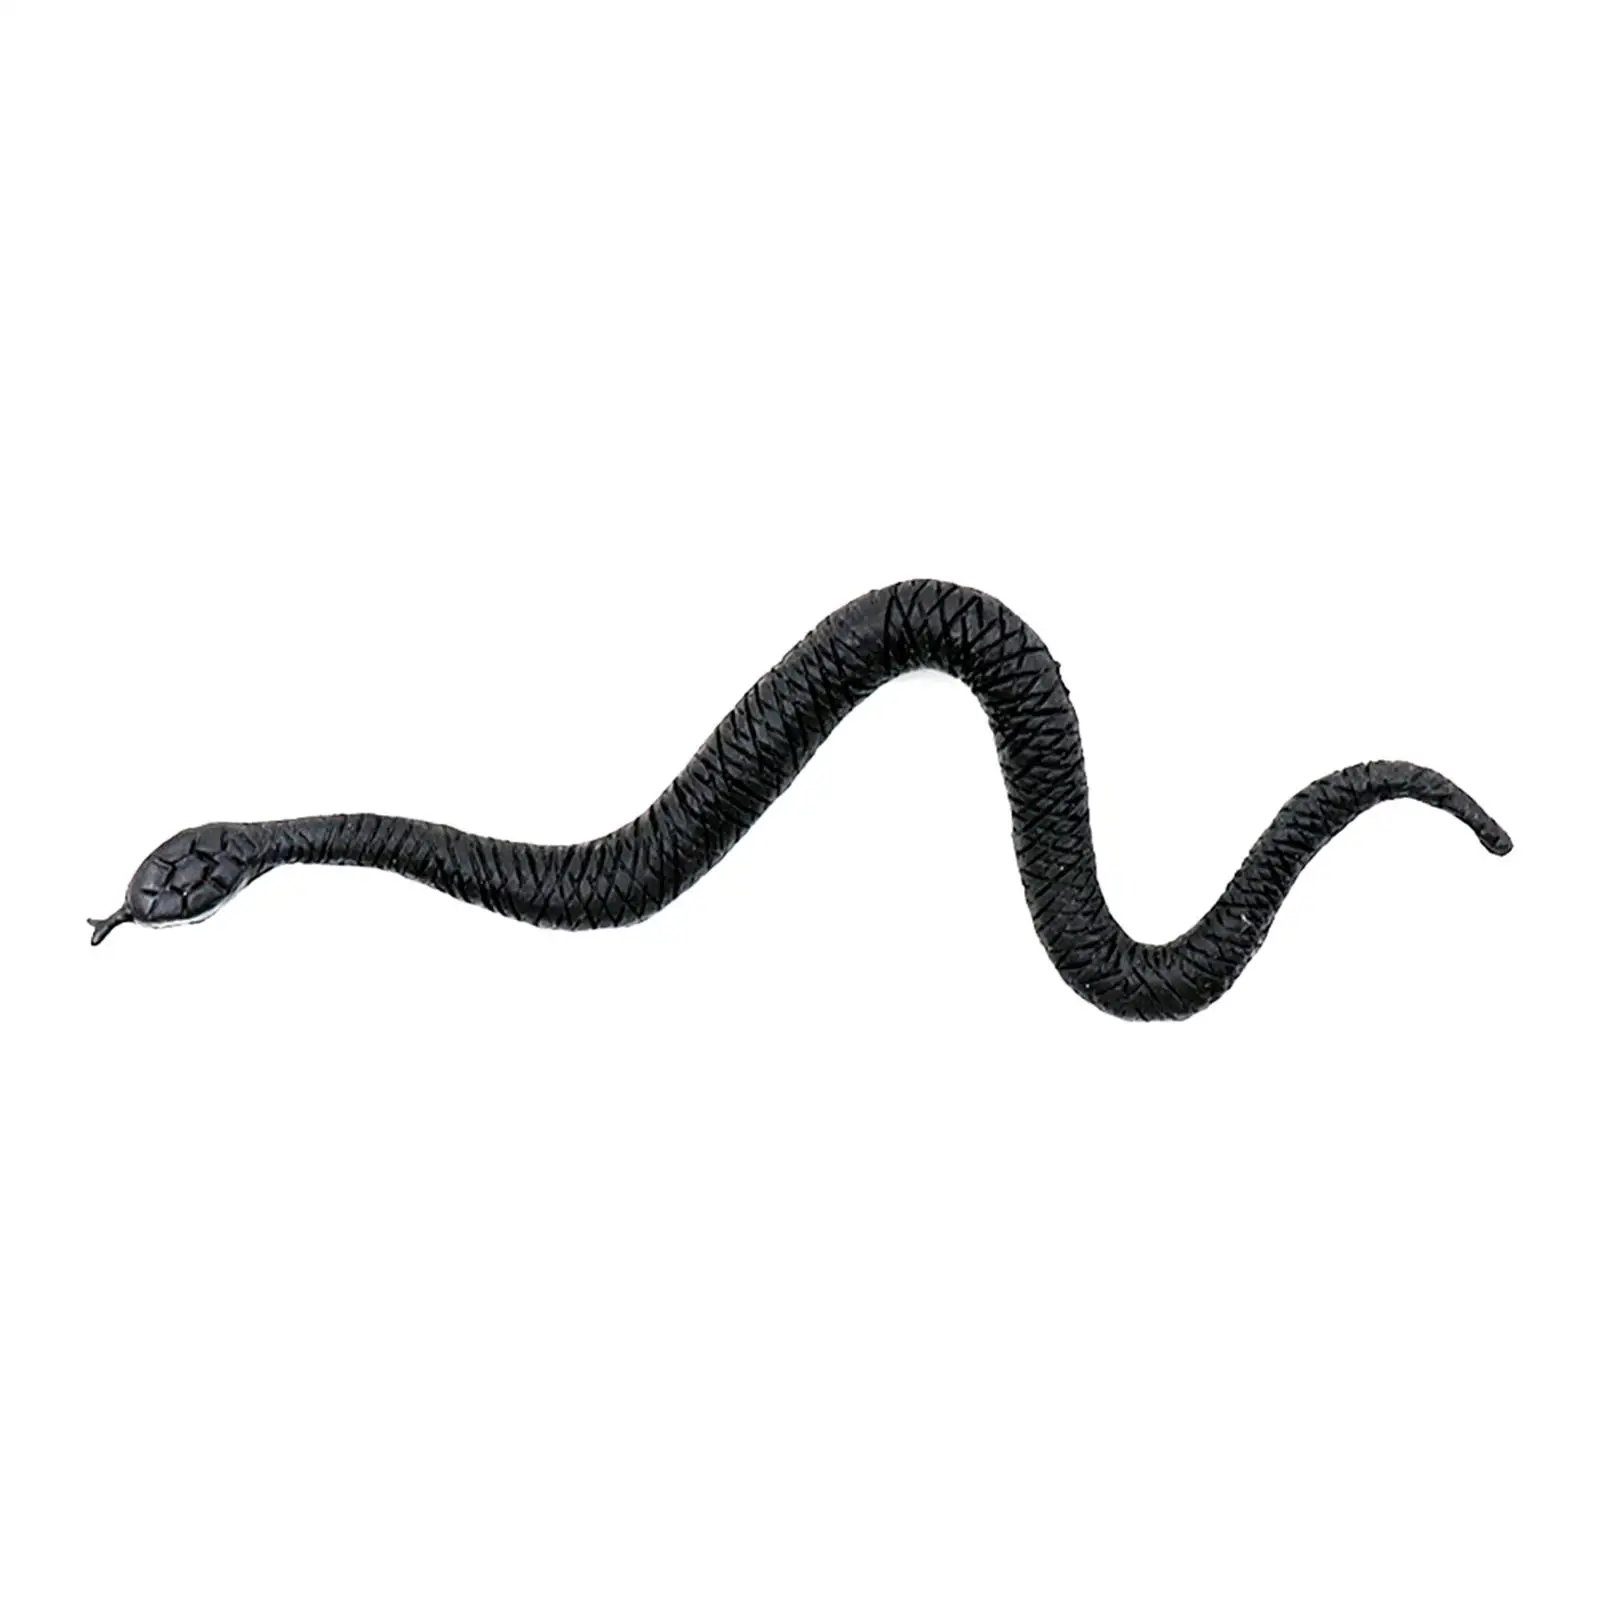 

Страшная жуткая змея, пугающая игрушка на Хэллоуин, искусственная игрушка для дурака апреля, ужасный настольный декор, искусственная змея, фигурка